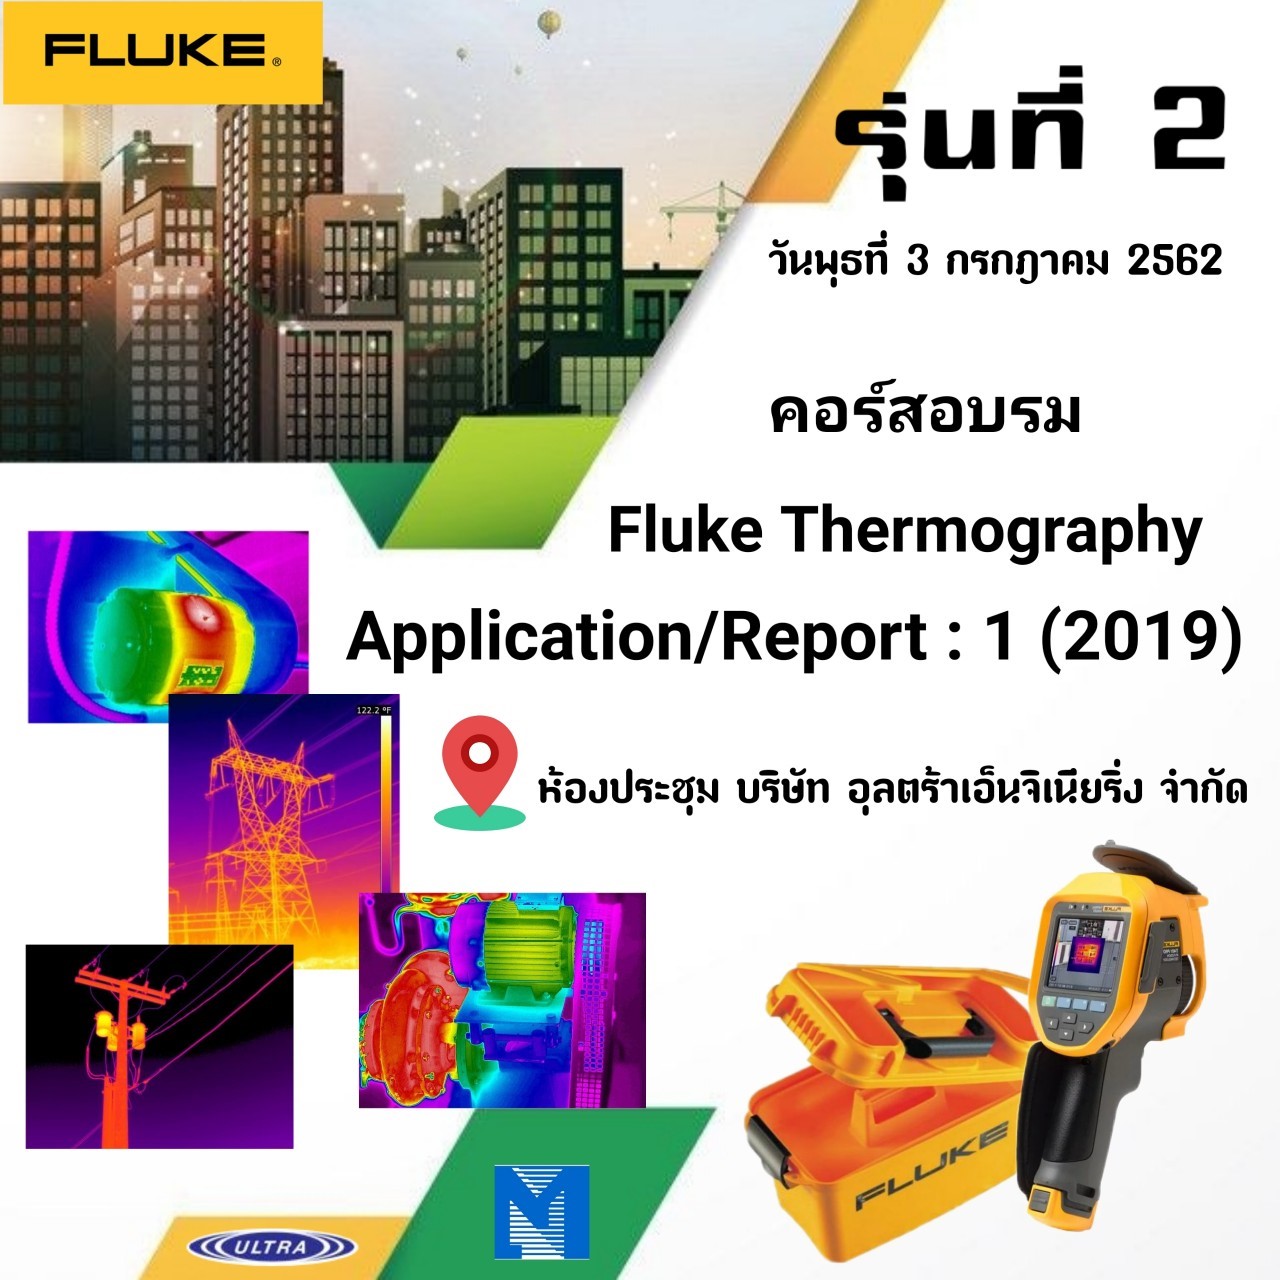 ประมวลภาพรุ่นที่ 2 สัมมนาเชิงปฏิบัติการเรื่อง Fluke Thermography Application Report 1